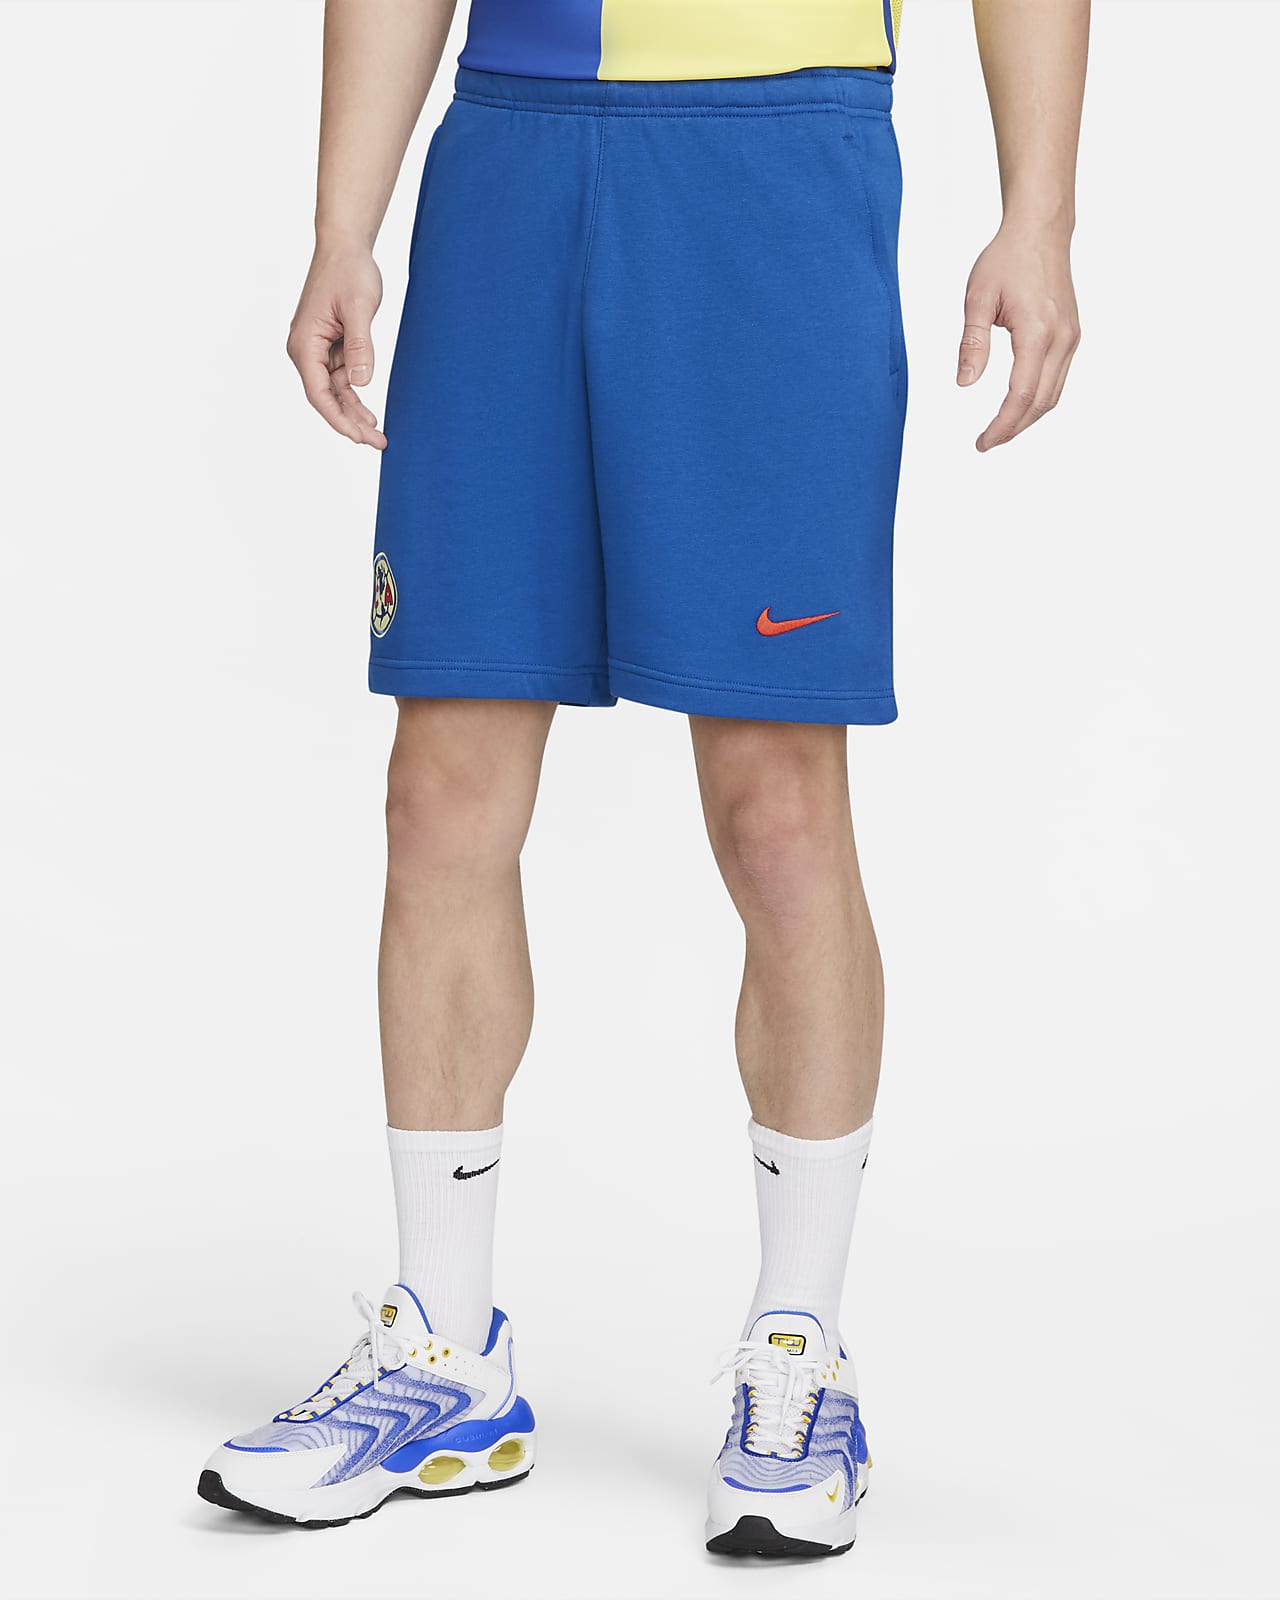 Club América Men's Nike Soccer Shorts